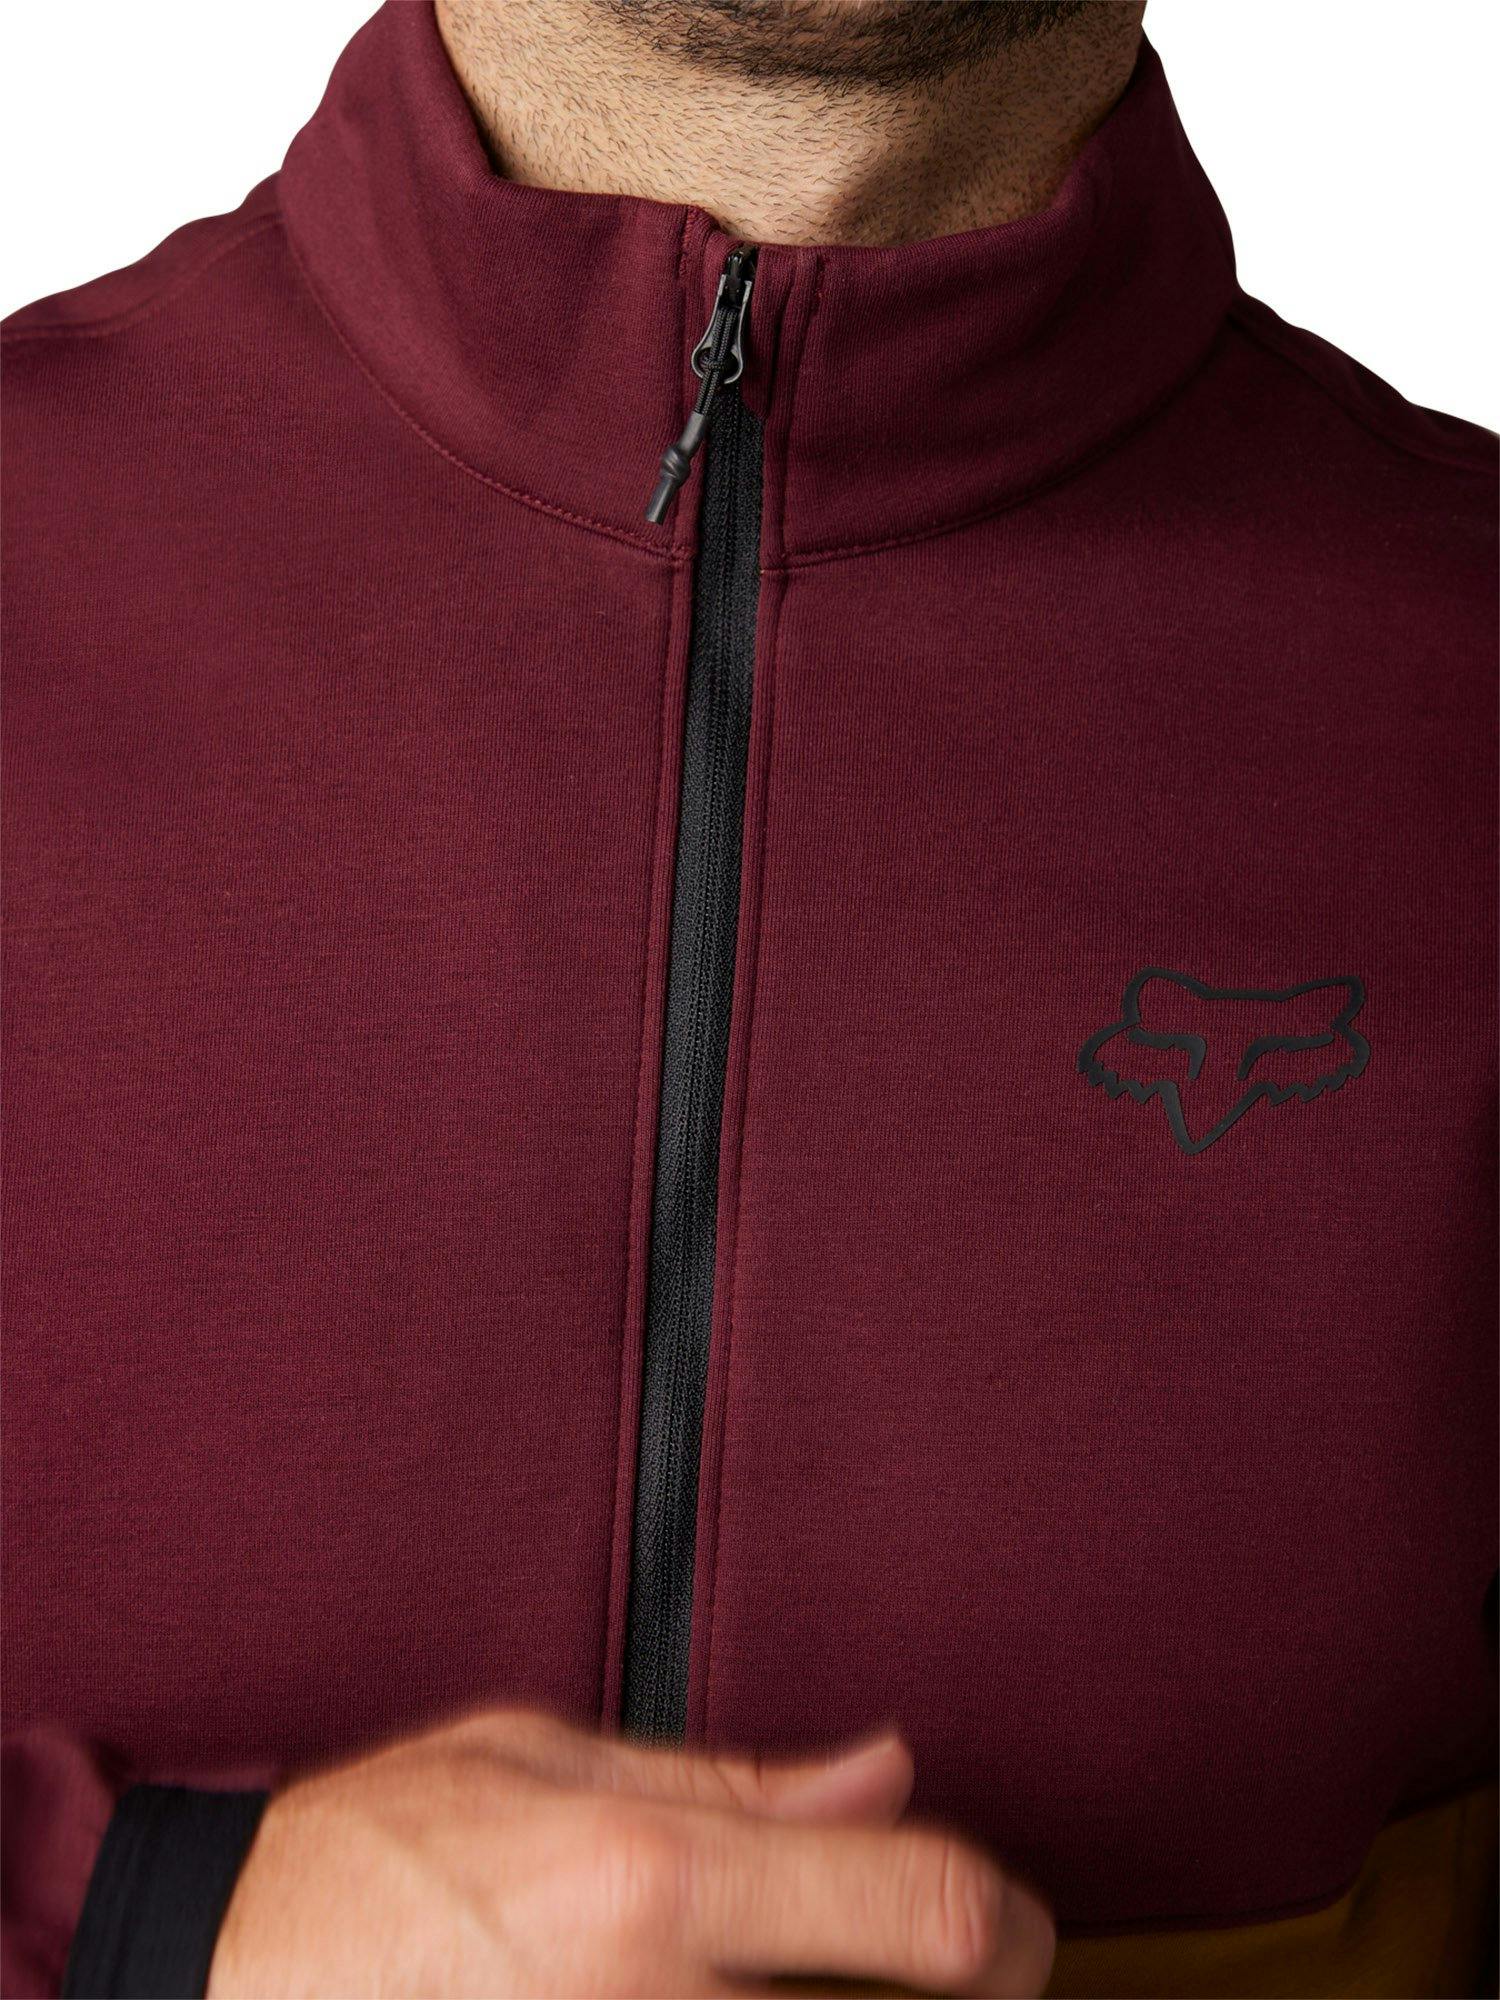 Product gallery image number 4 for product Ranger Fire Fleece Crew Sweatshirt - Men's